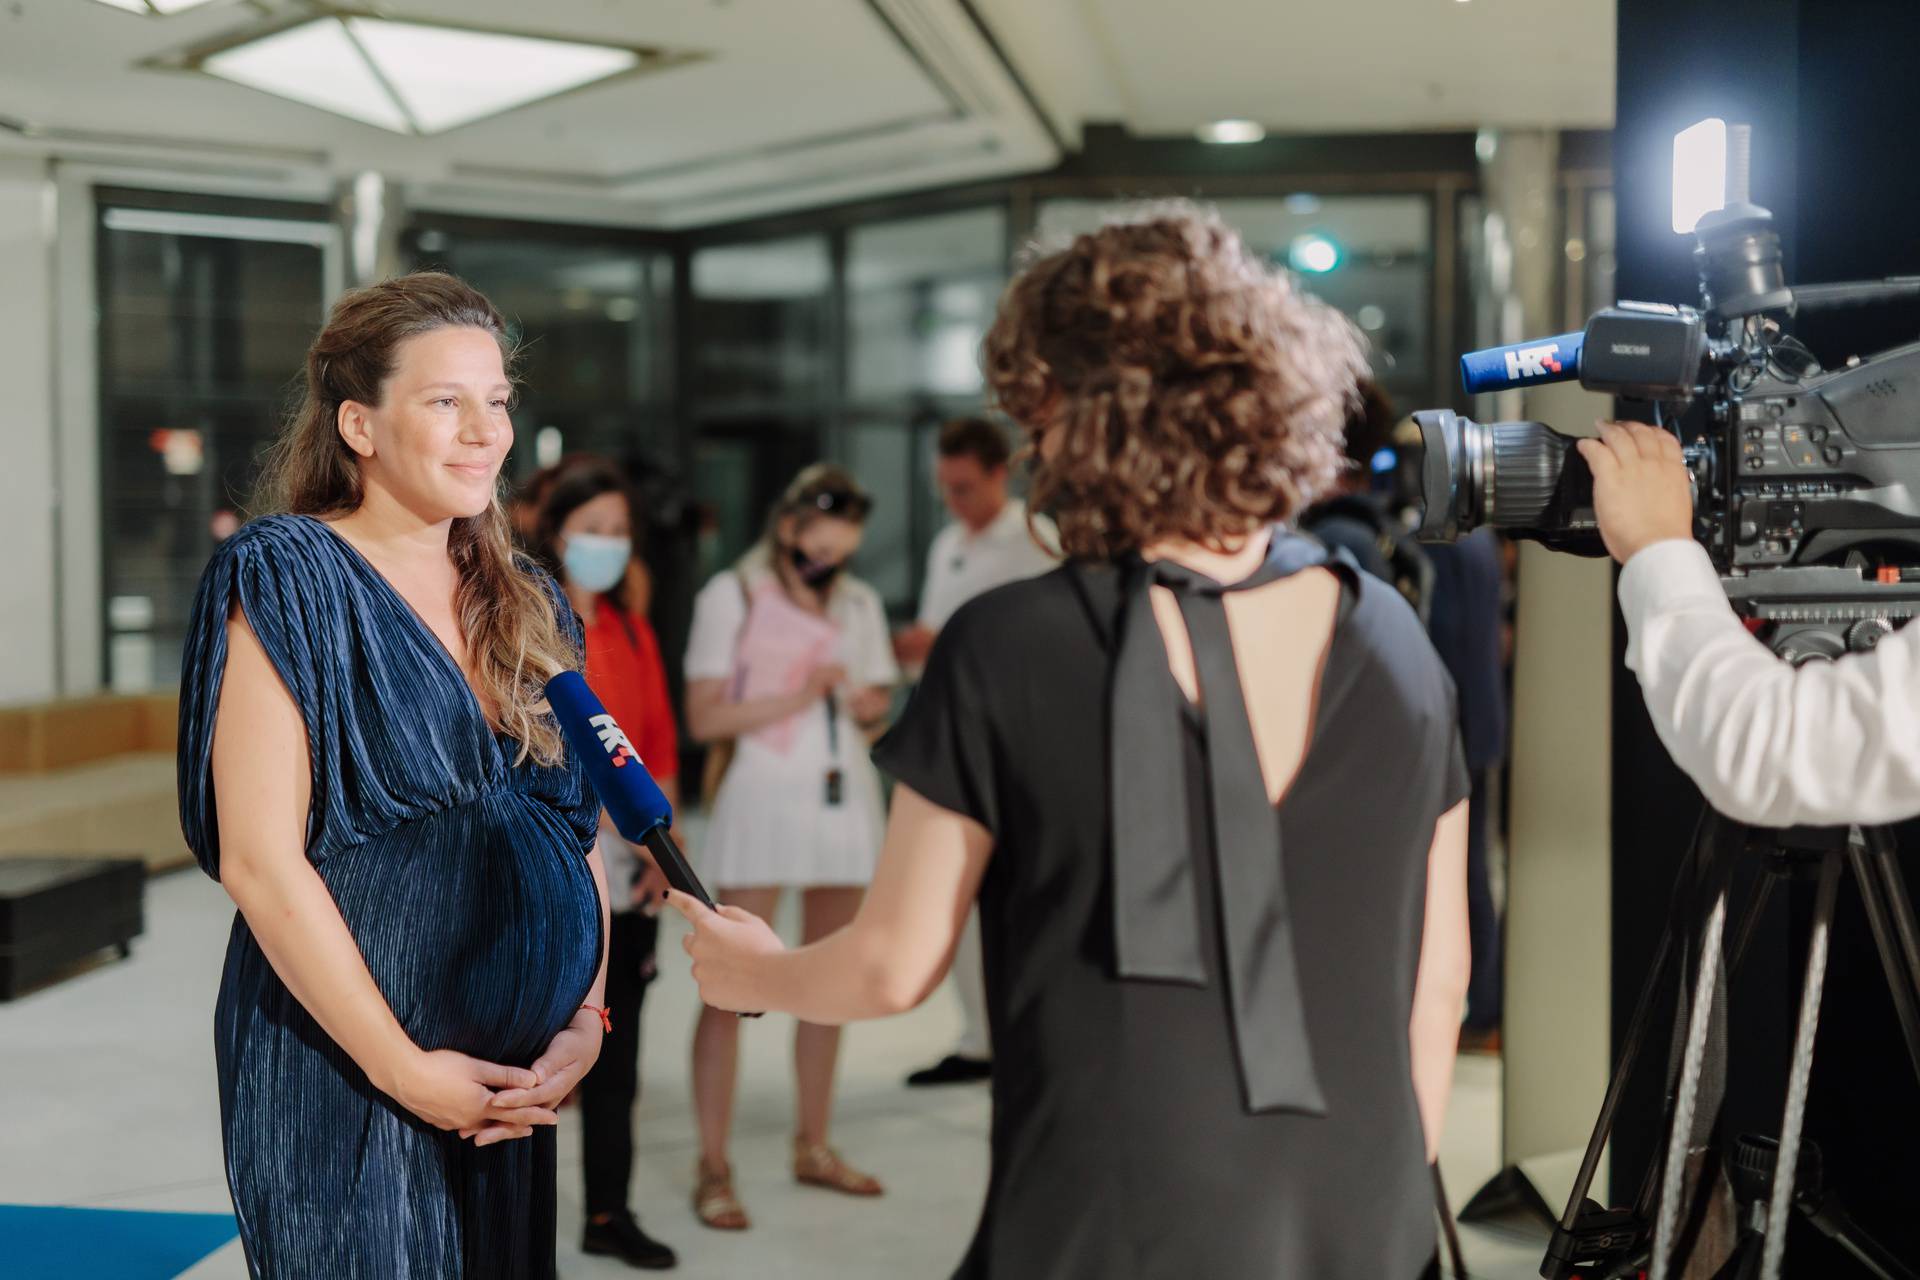 'Murina' je prvi hrvatski film u Cannesu u šest godina, trudna redateljica 'blistala' na festivalu